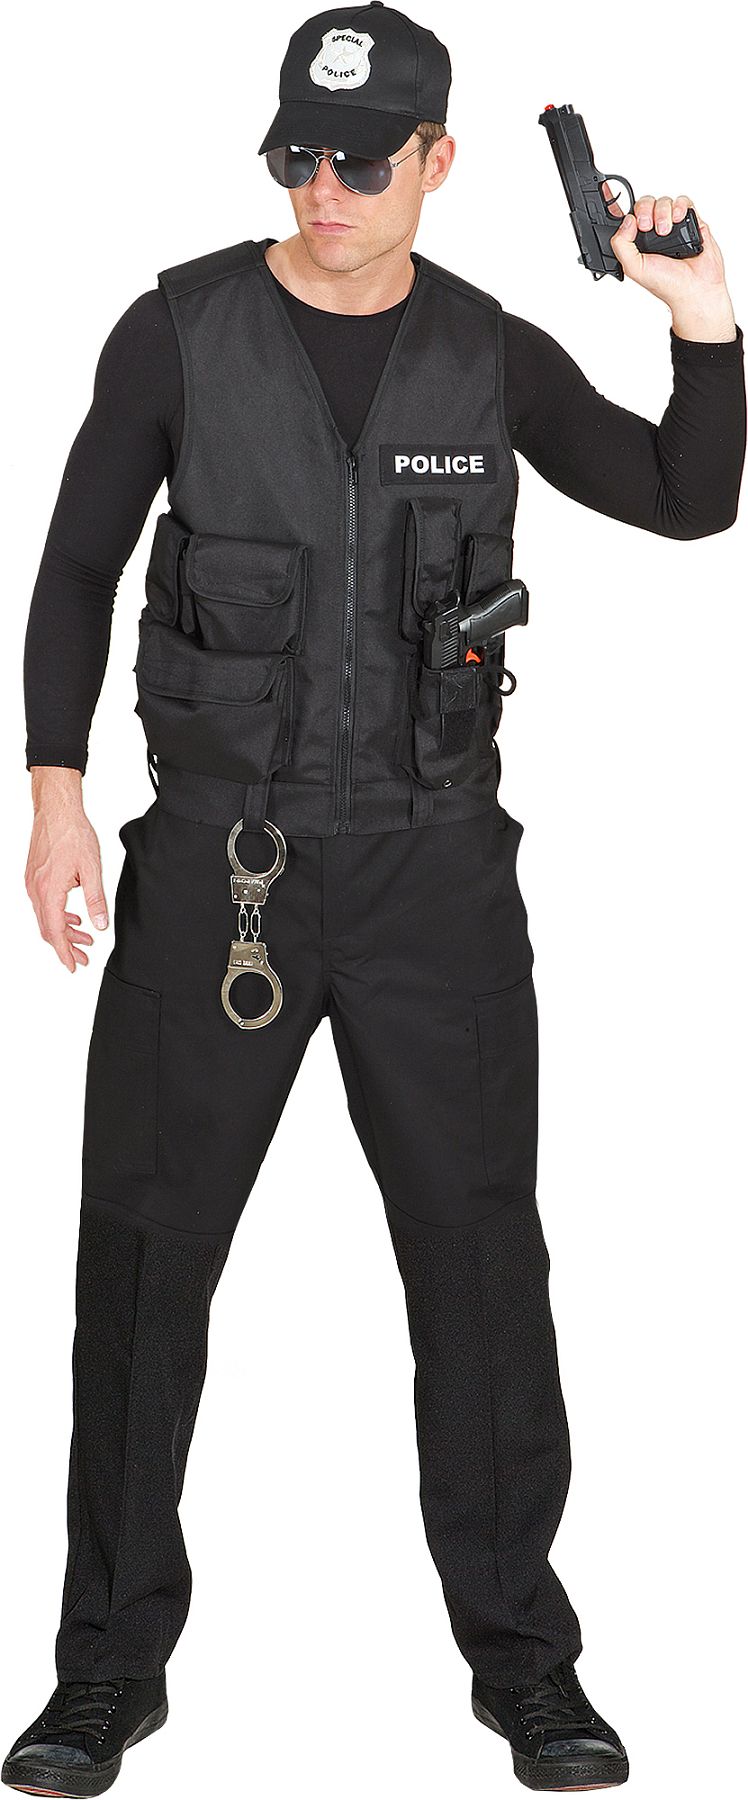 Police vest, black